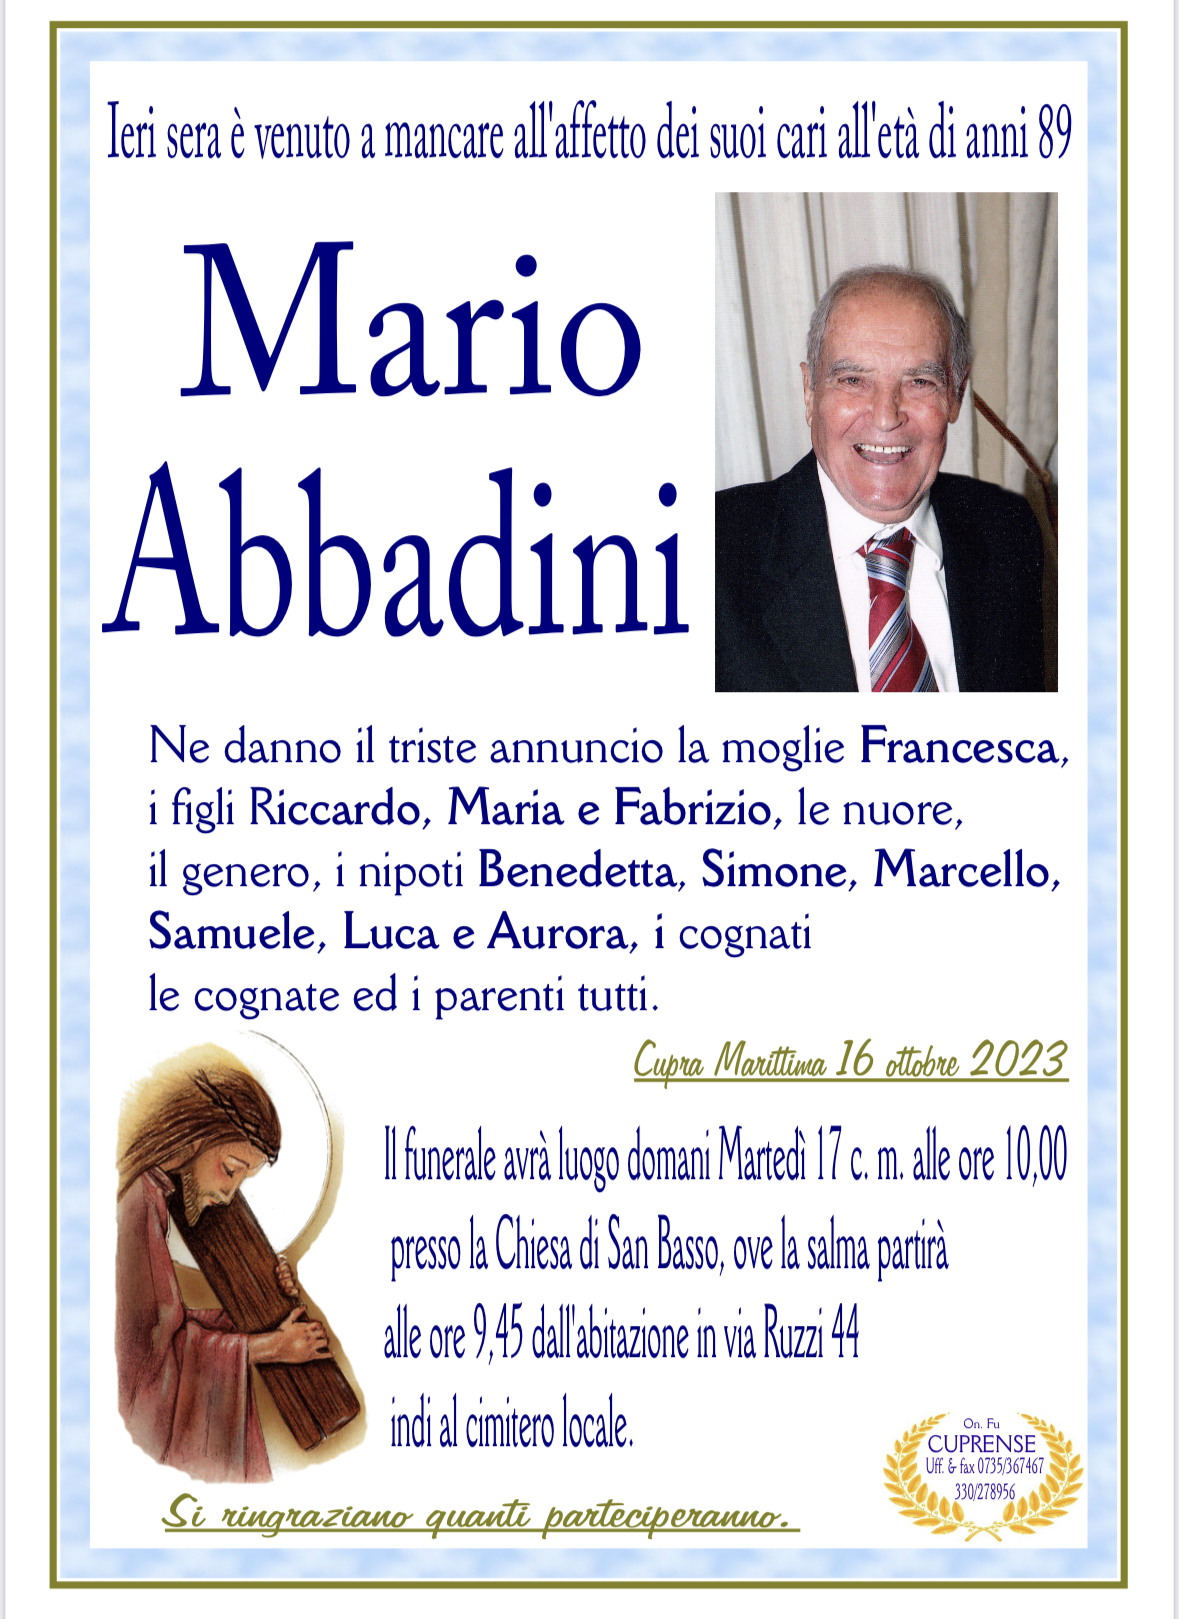 Mario Abbadini